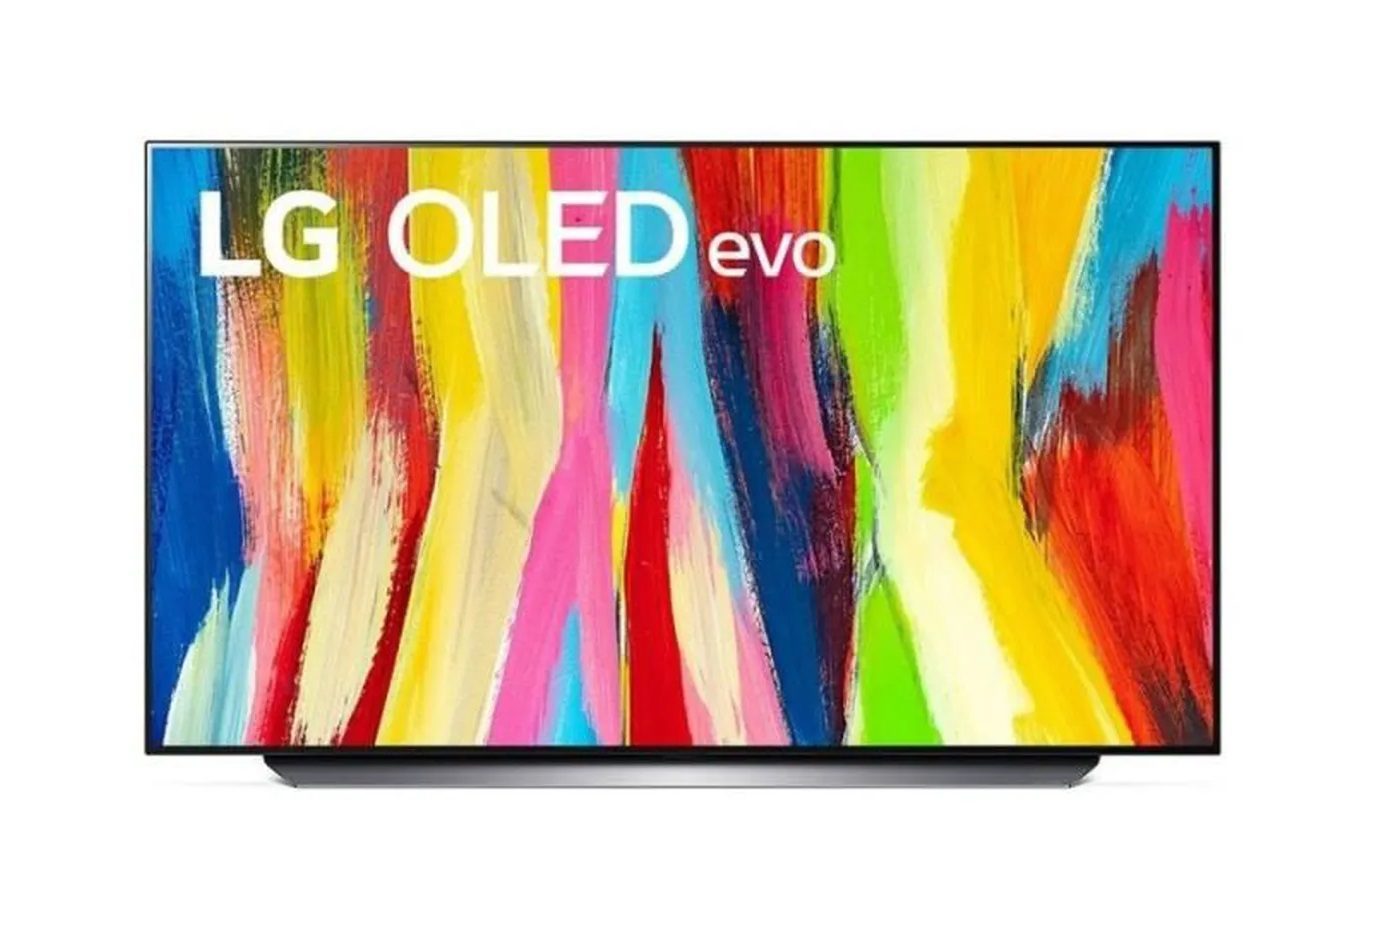 Vous ne rêvez pas, cette TV OLED 4K LG C2 est bien à ce prix de DINGUE